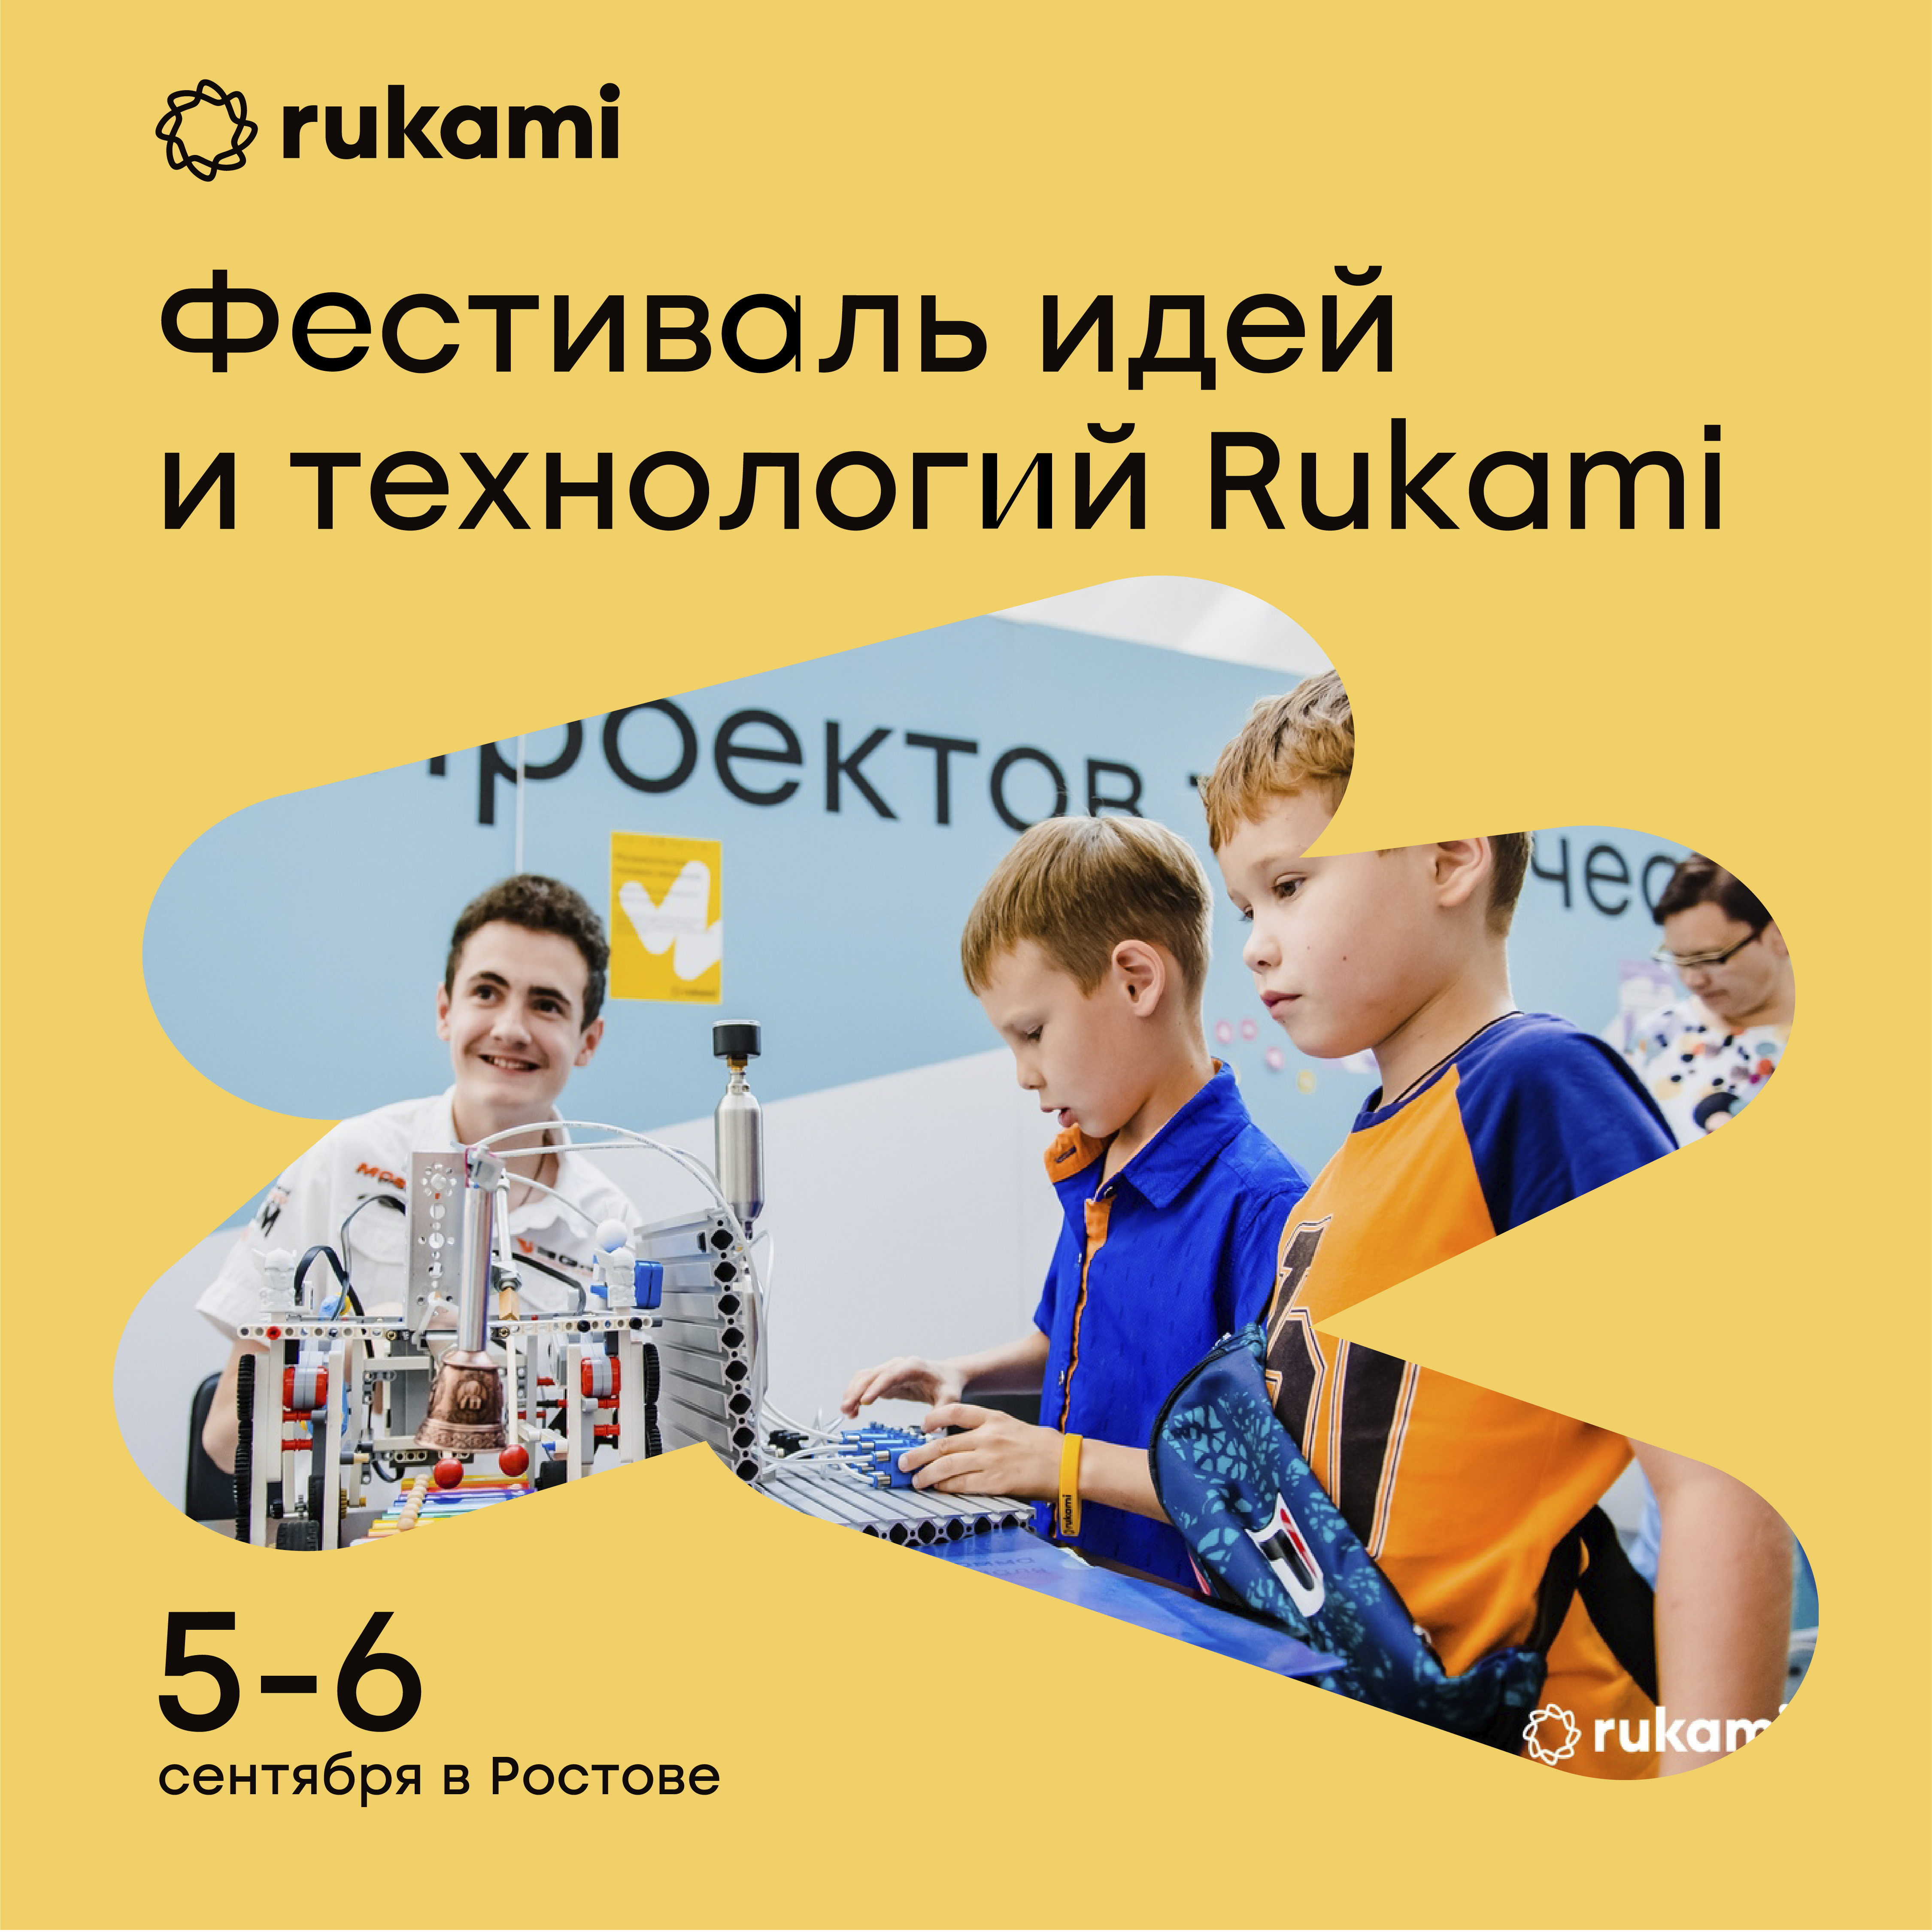 70 мастер-классов за 2 дня: фестиваль идей и технологий Rukami пройдет в Ростове уже в эти выходные